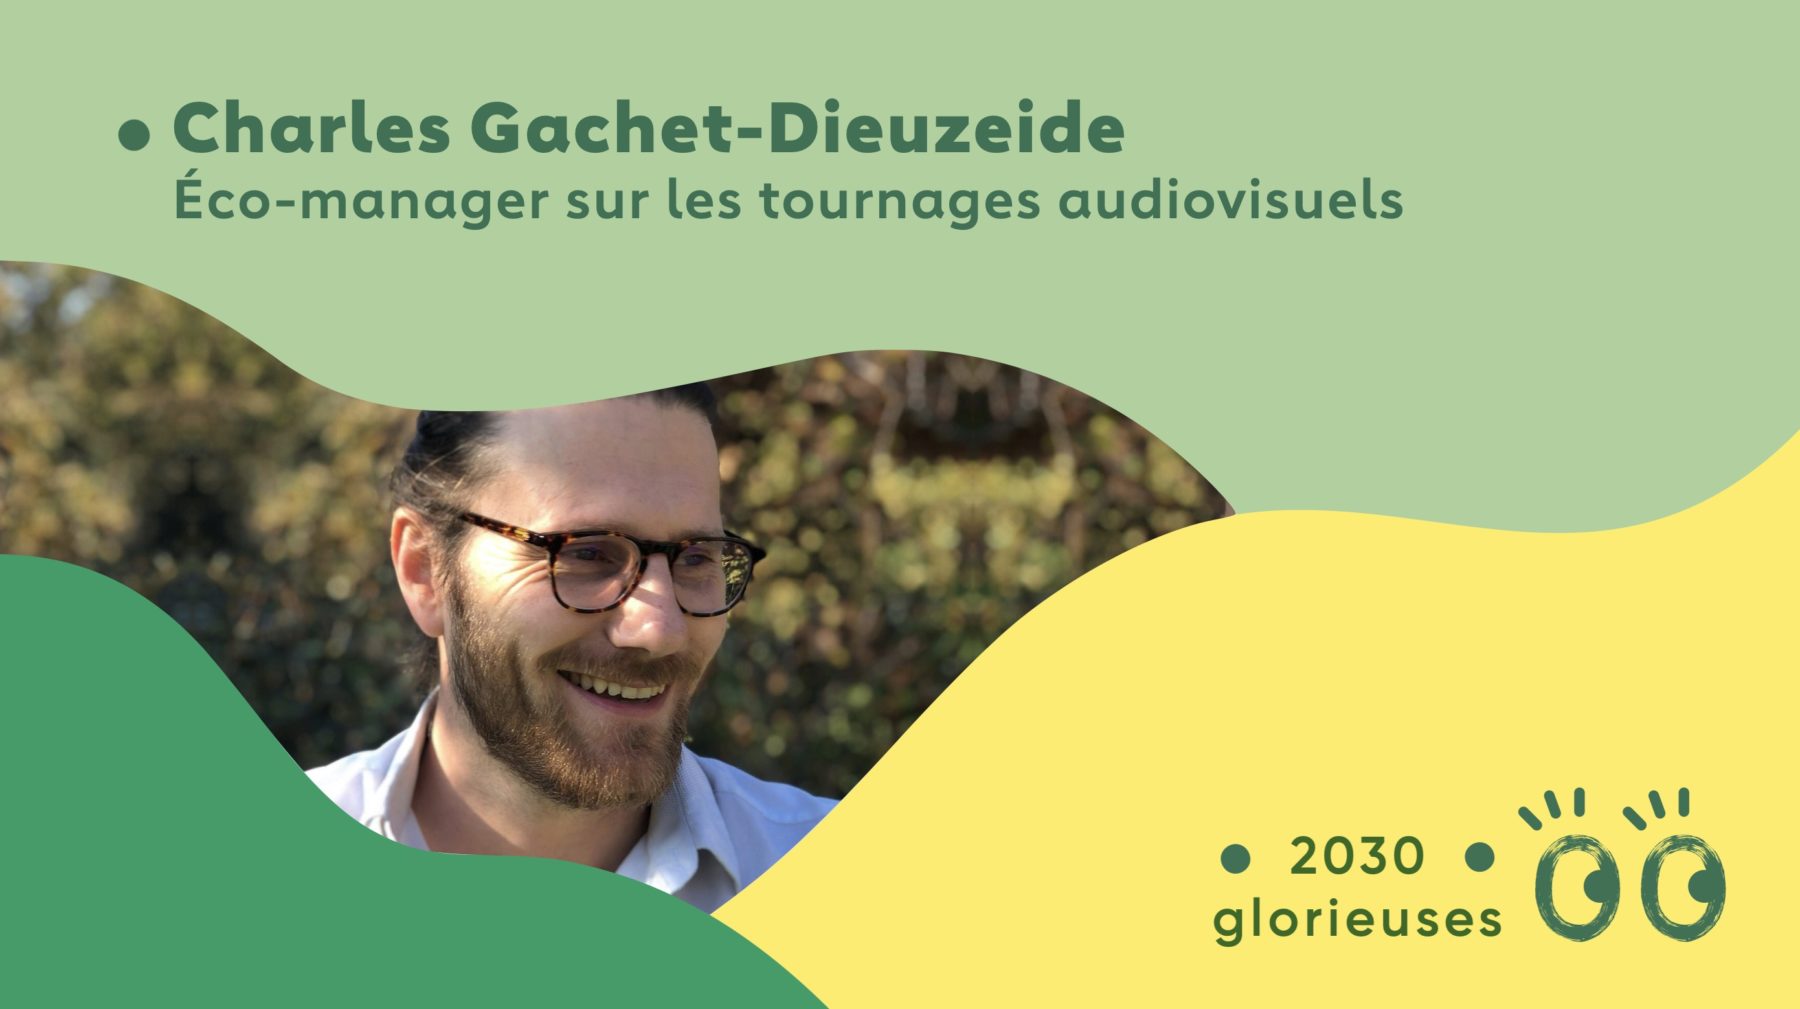 2030 Glorieuses #21 : Charles Gachet-Dieuzeide : "Le cinéma peut créer des rêves plus durables"